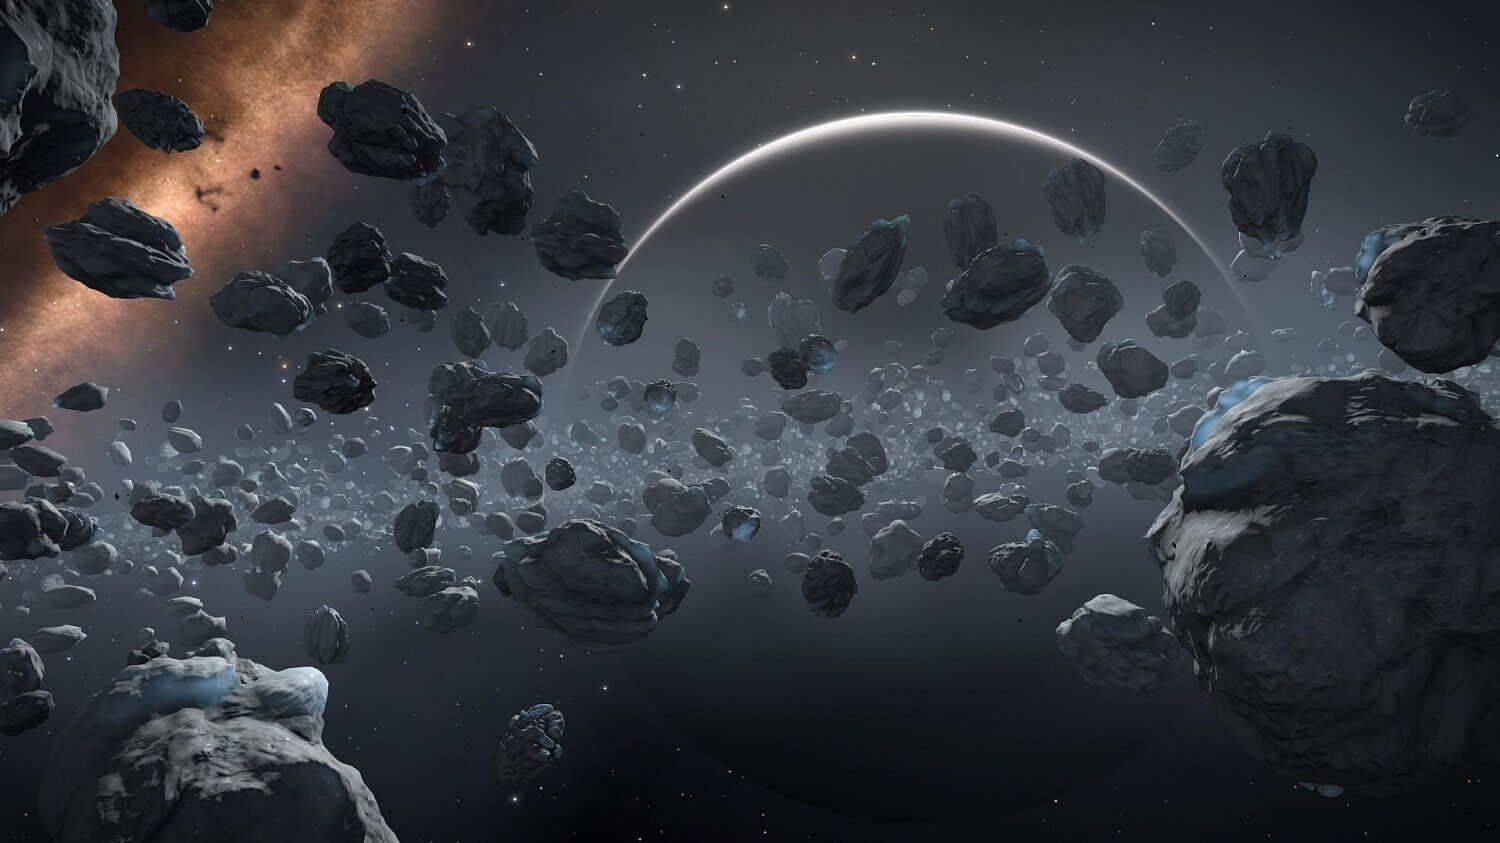 Происхождение Солнечной системы “зашифровано” в минералах? Метеорит Эль-Али теоретически мог возникнуть в поясе астероидов. Фото.